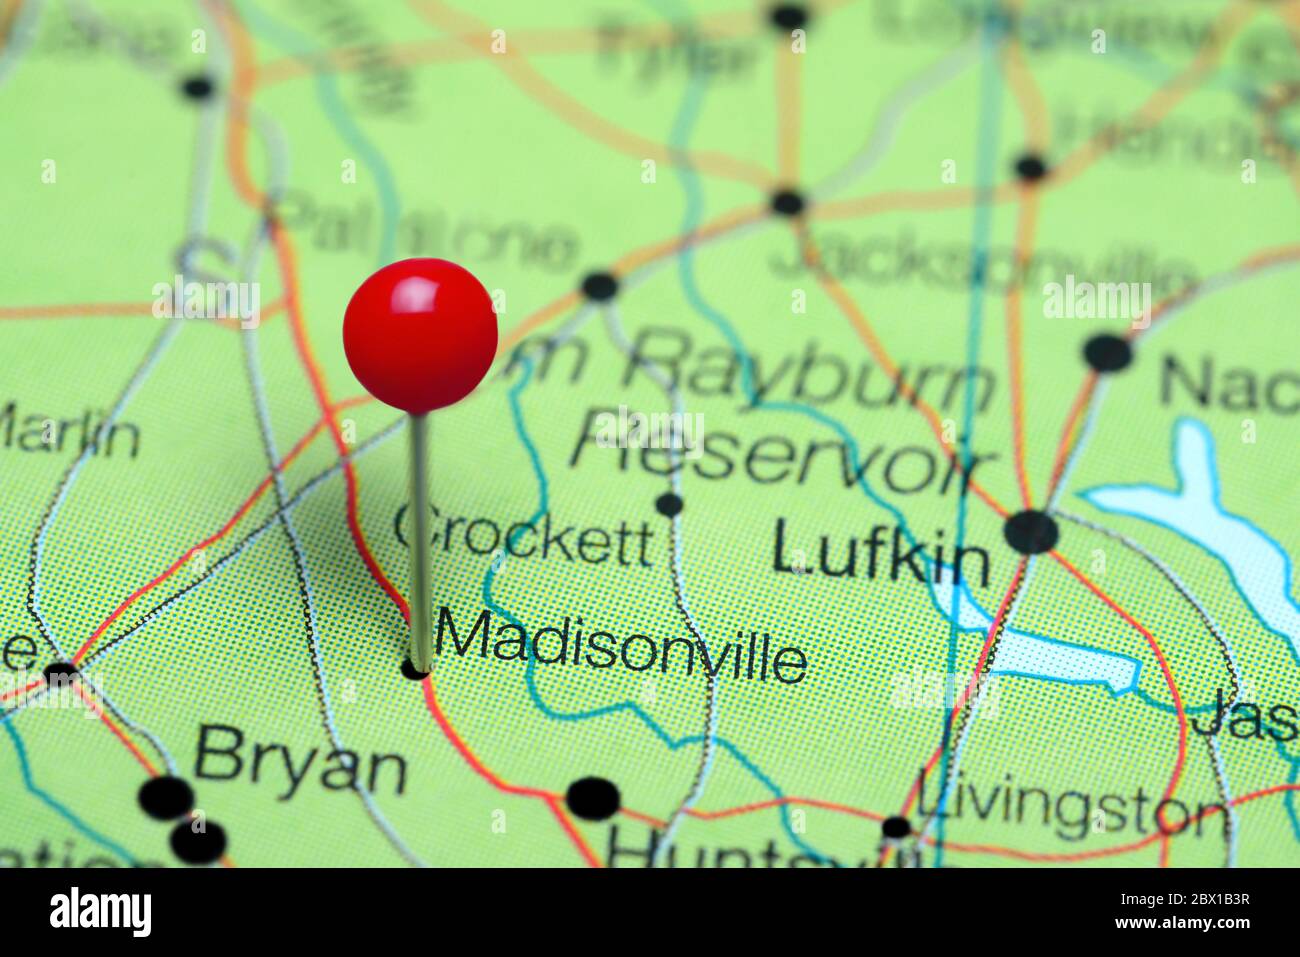 Madisonville cubrió un mapa de Texas, Estados Unidos Foto de stock